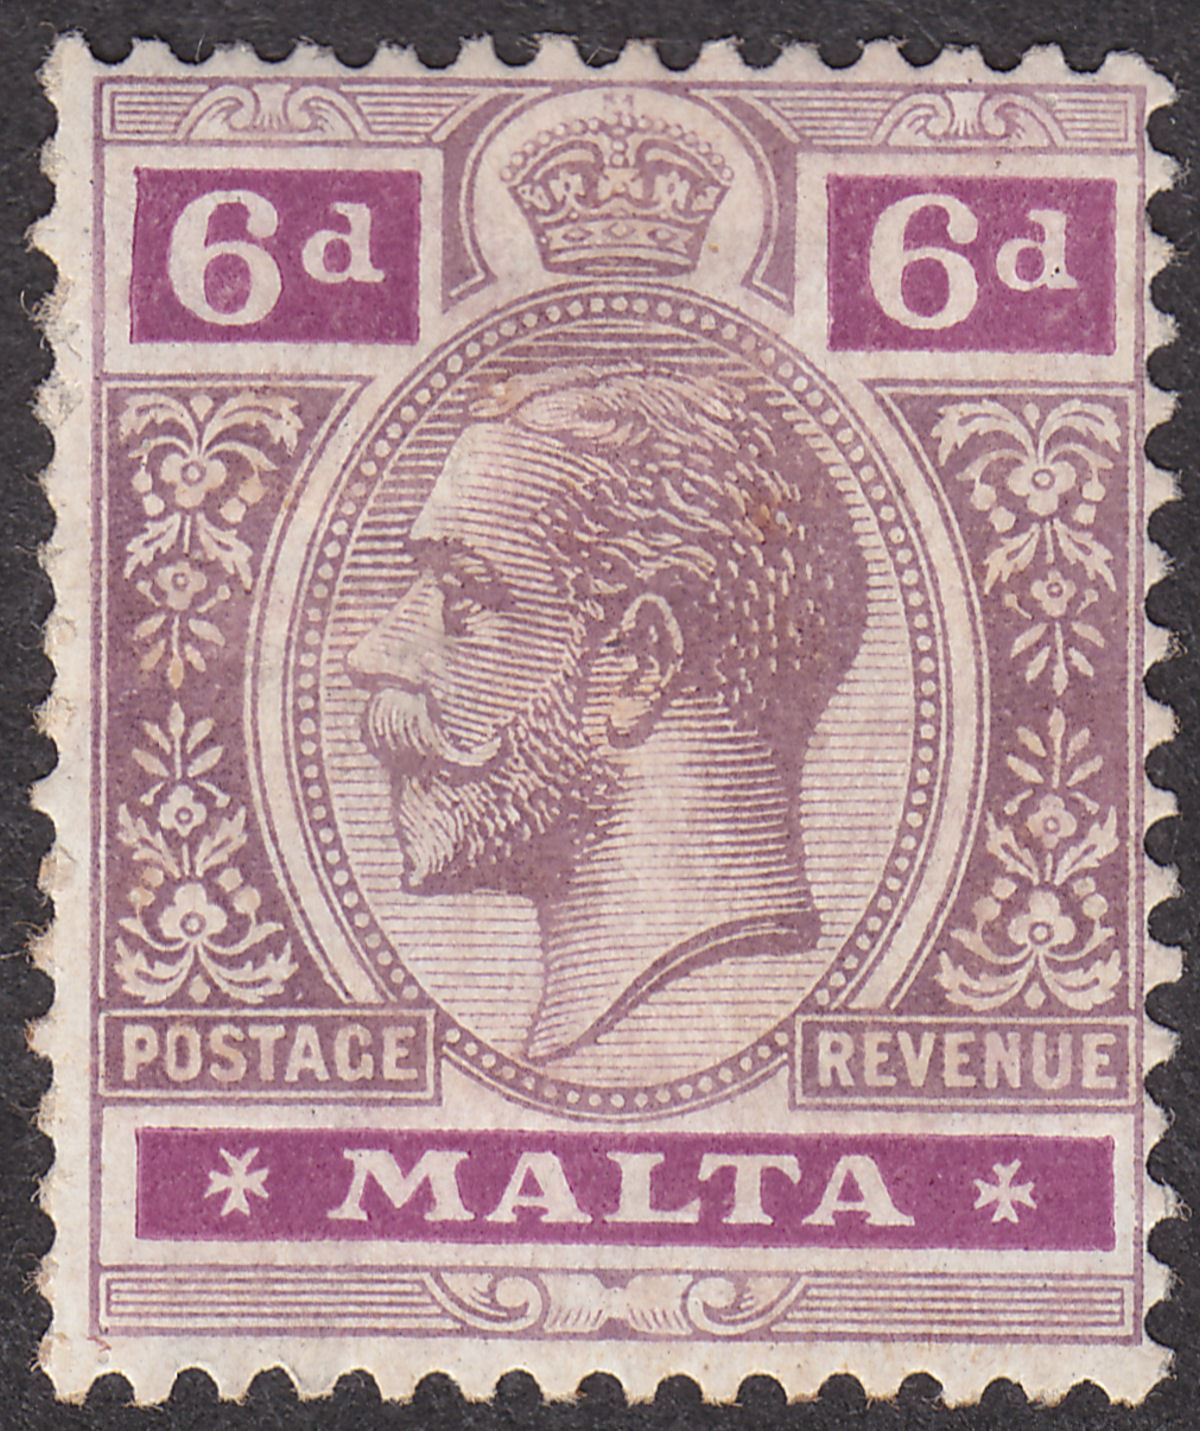 Malta 1922 KGV 6d Dull and Bright Purple Mint SG102 cat £35 perf faults